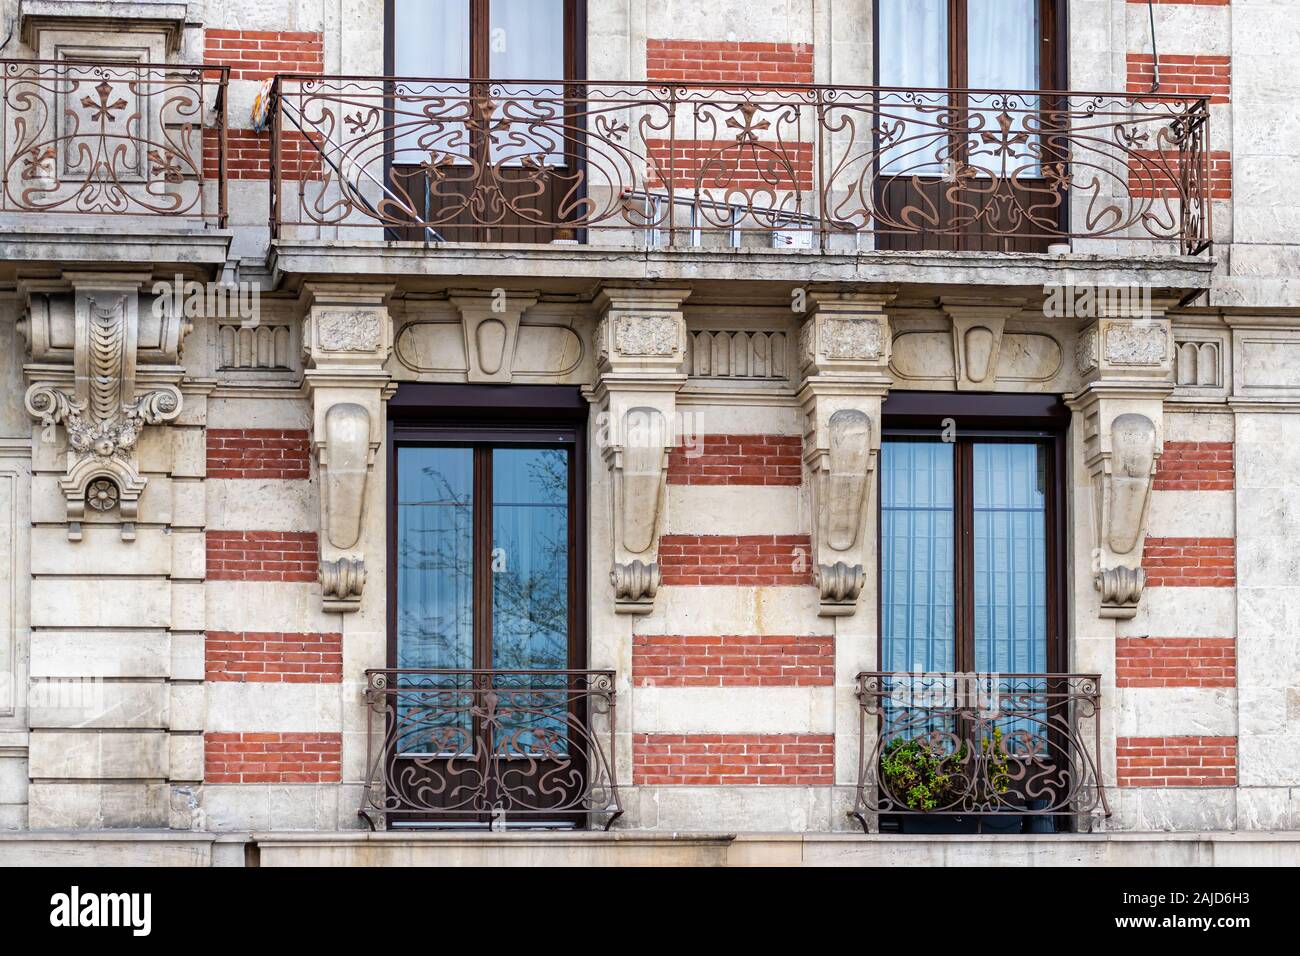 Fassade eines historischen Backsteingebäude mit Metall Balkone. Genf, Schweiz - Bild Stockfoto